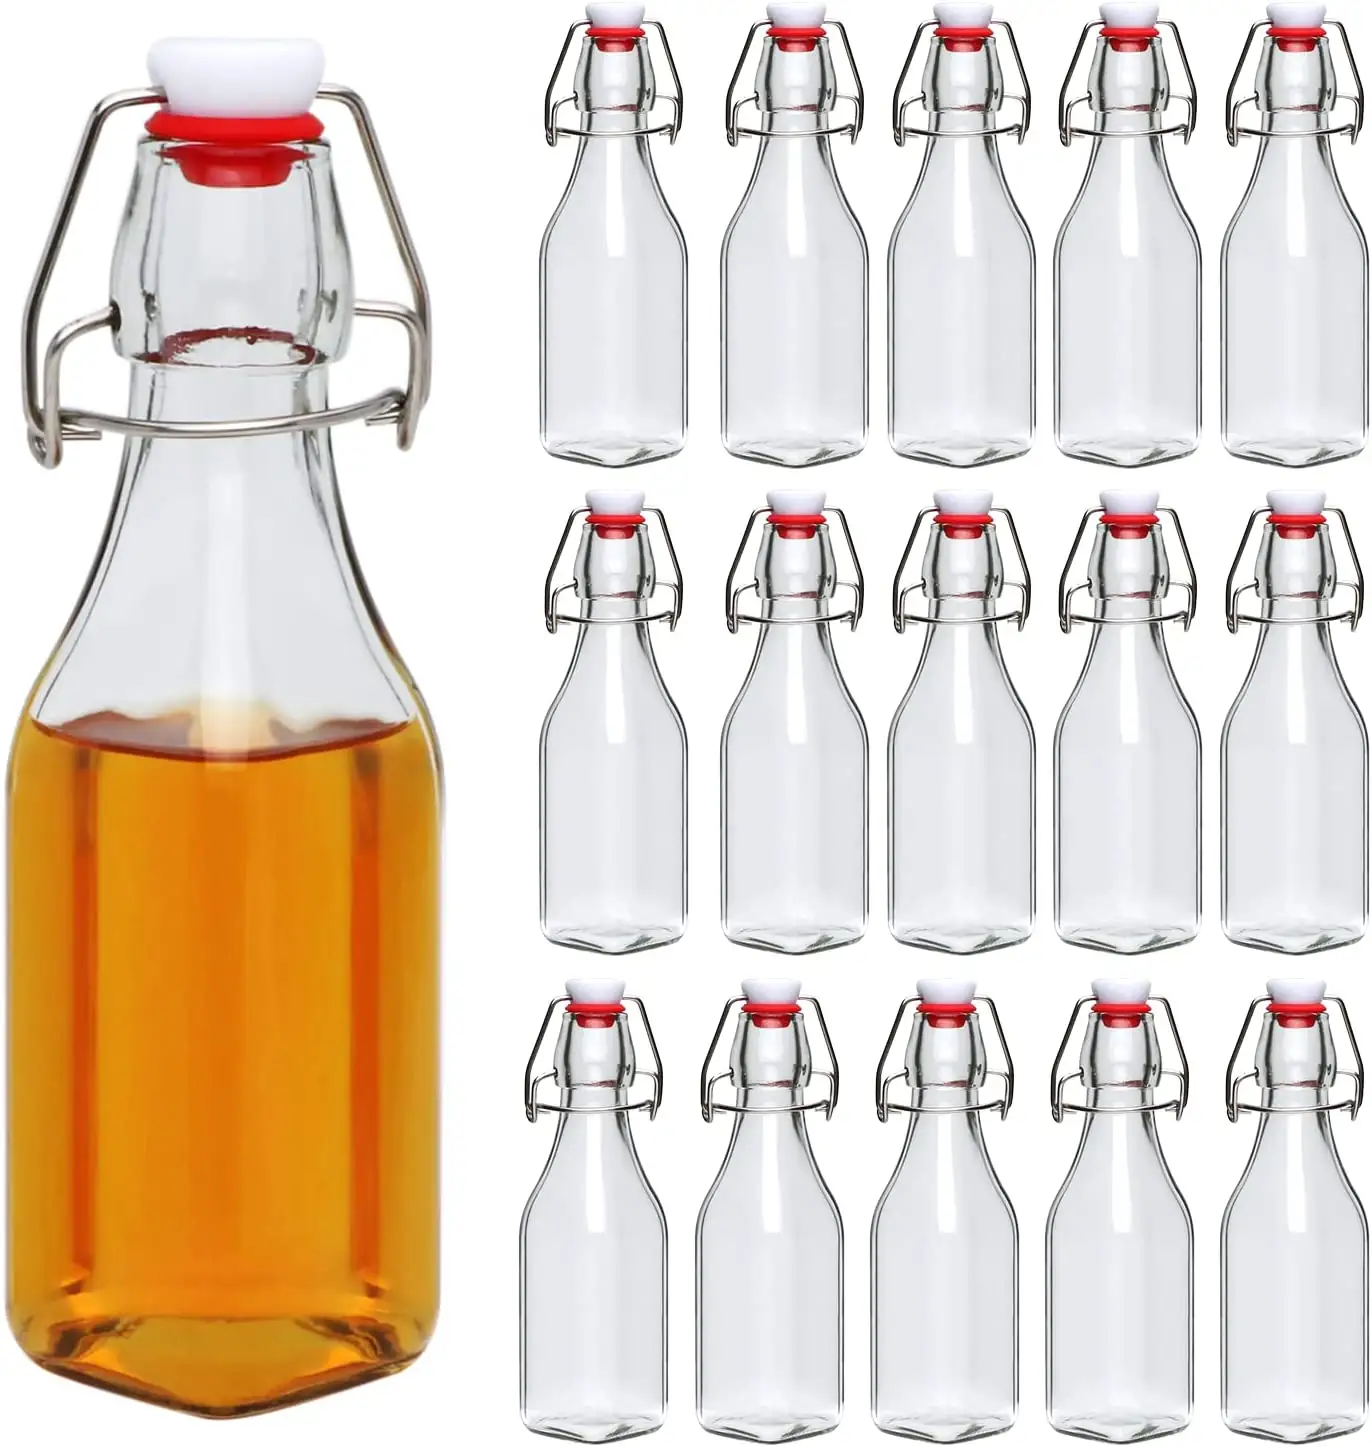 250ml चौकोर आकार स्विंग शीर्ष पक कांच की बोतल पेय पदार्थ के लिए, तेल, सिरका, Kombucha, बियर, पानी, सोडा